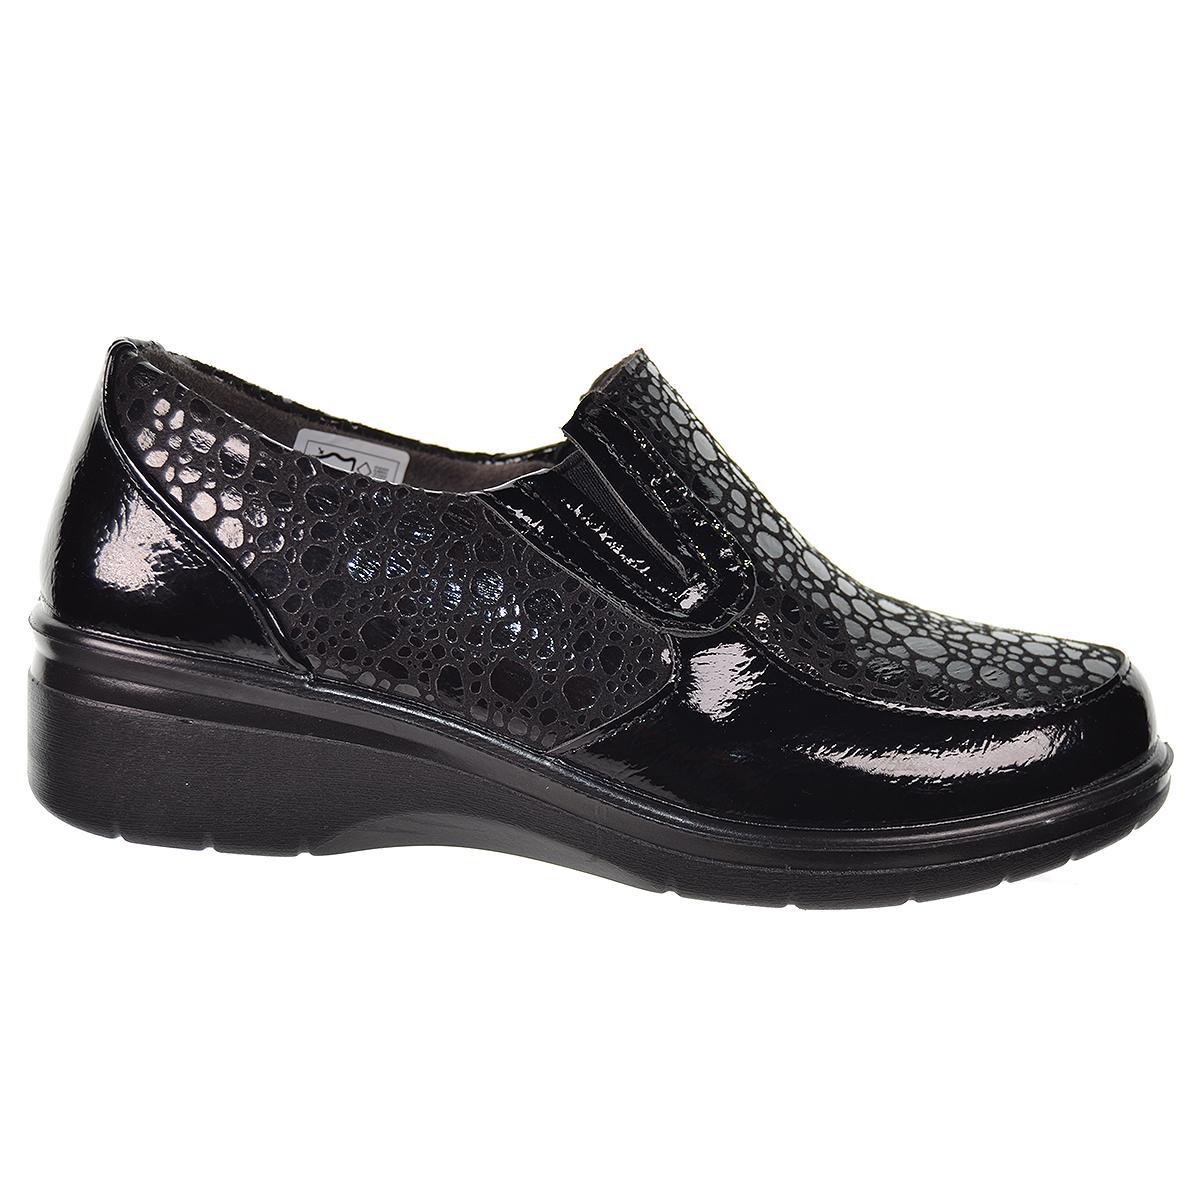 25361 Amarpies Zapato Confort en charol sintético y textil. plantilla extraíble. Cordones elásticos. Ideal para pies delicados.